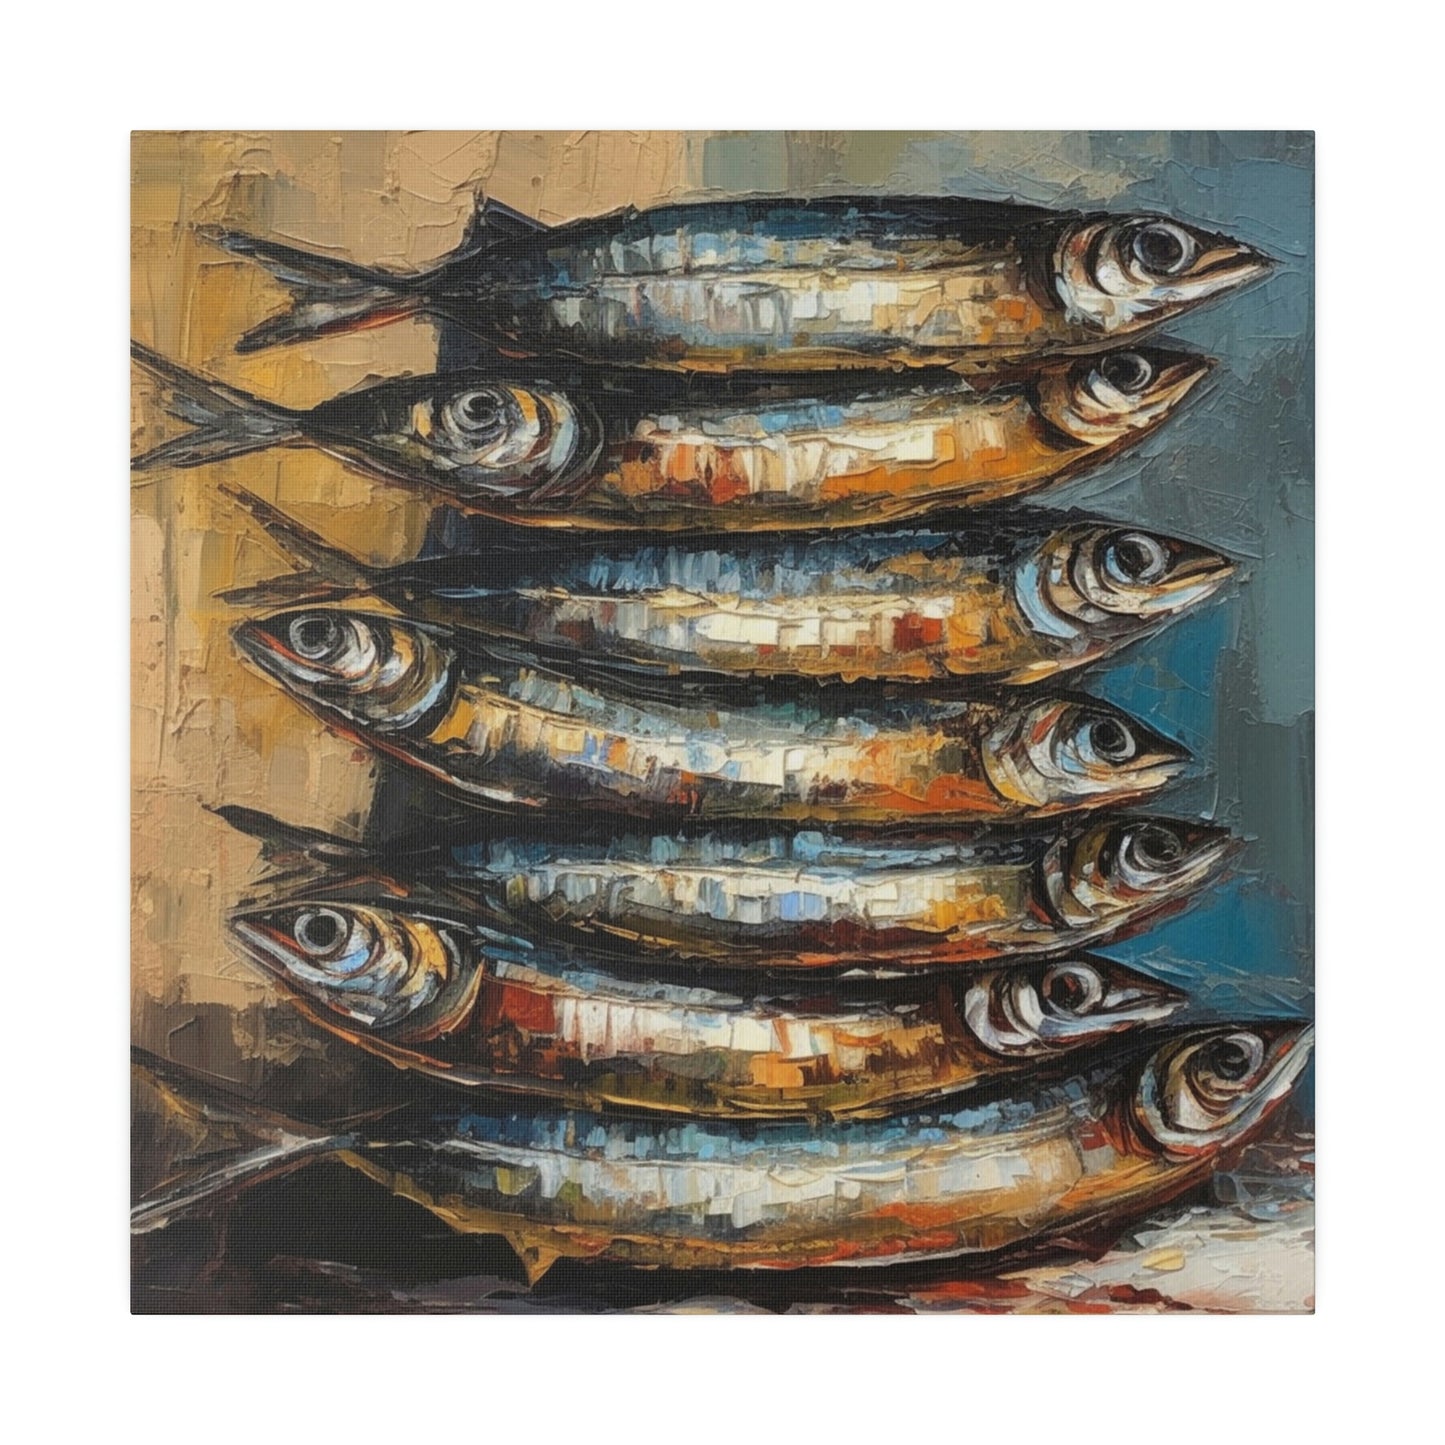 Stacked Sardines Italian Style Art - Canvas Print